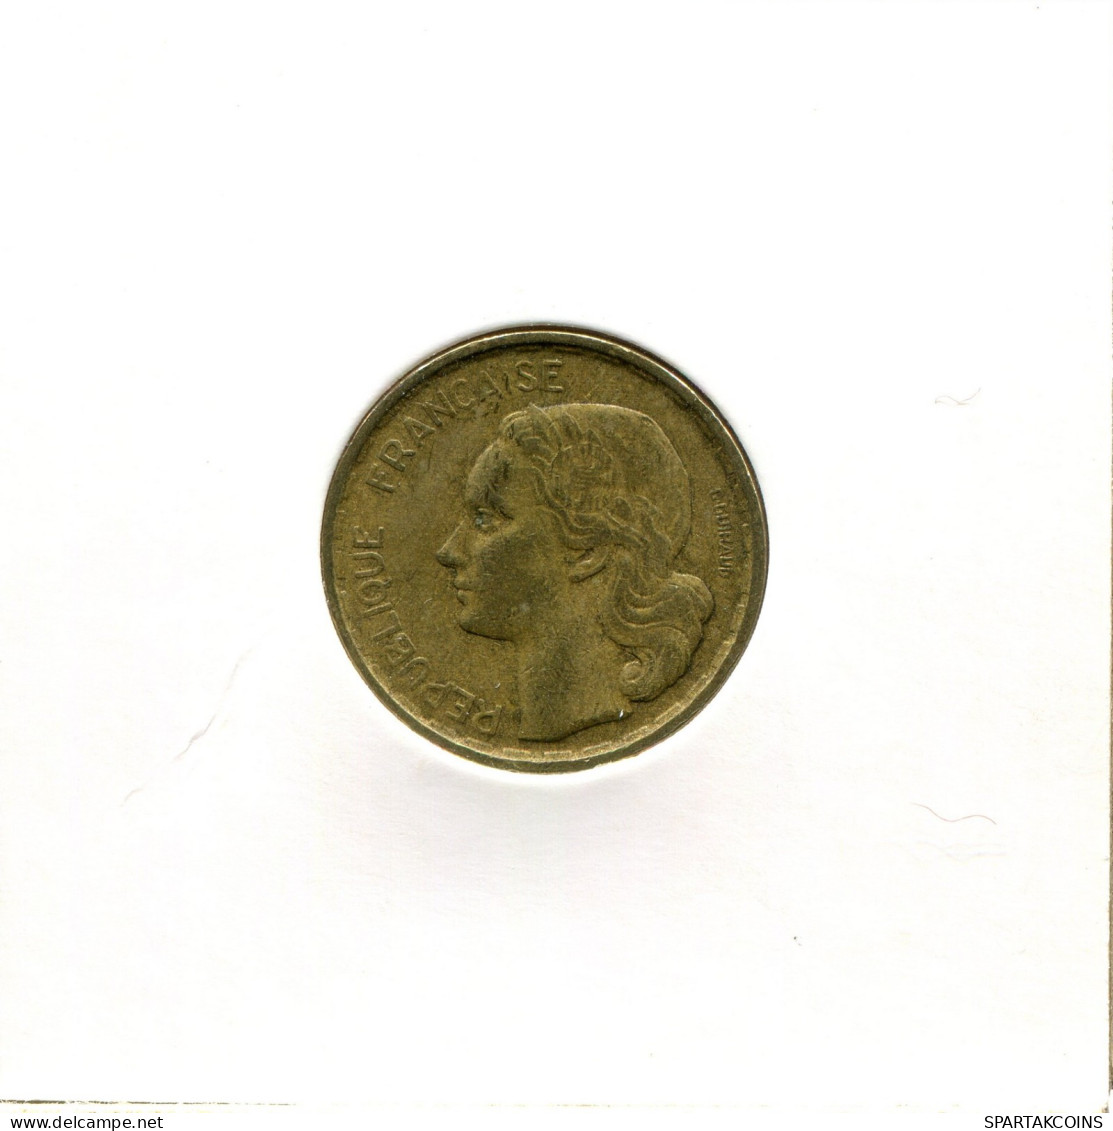 10 FRANCS 1951 B FRANKREICH FRANCE Französisch Münze #AW412.D.A - 10 Francs